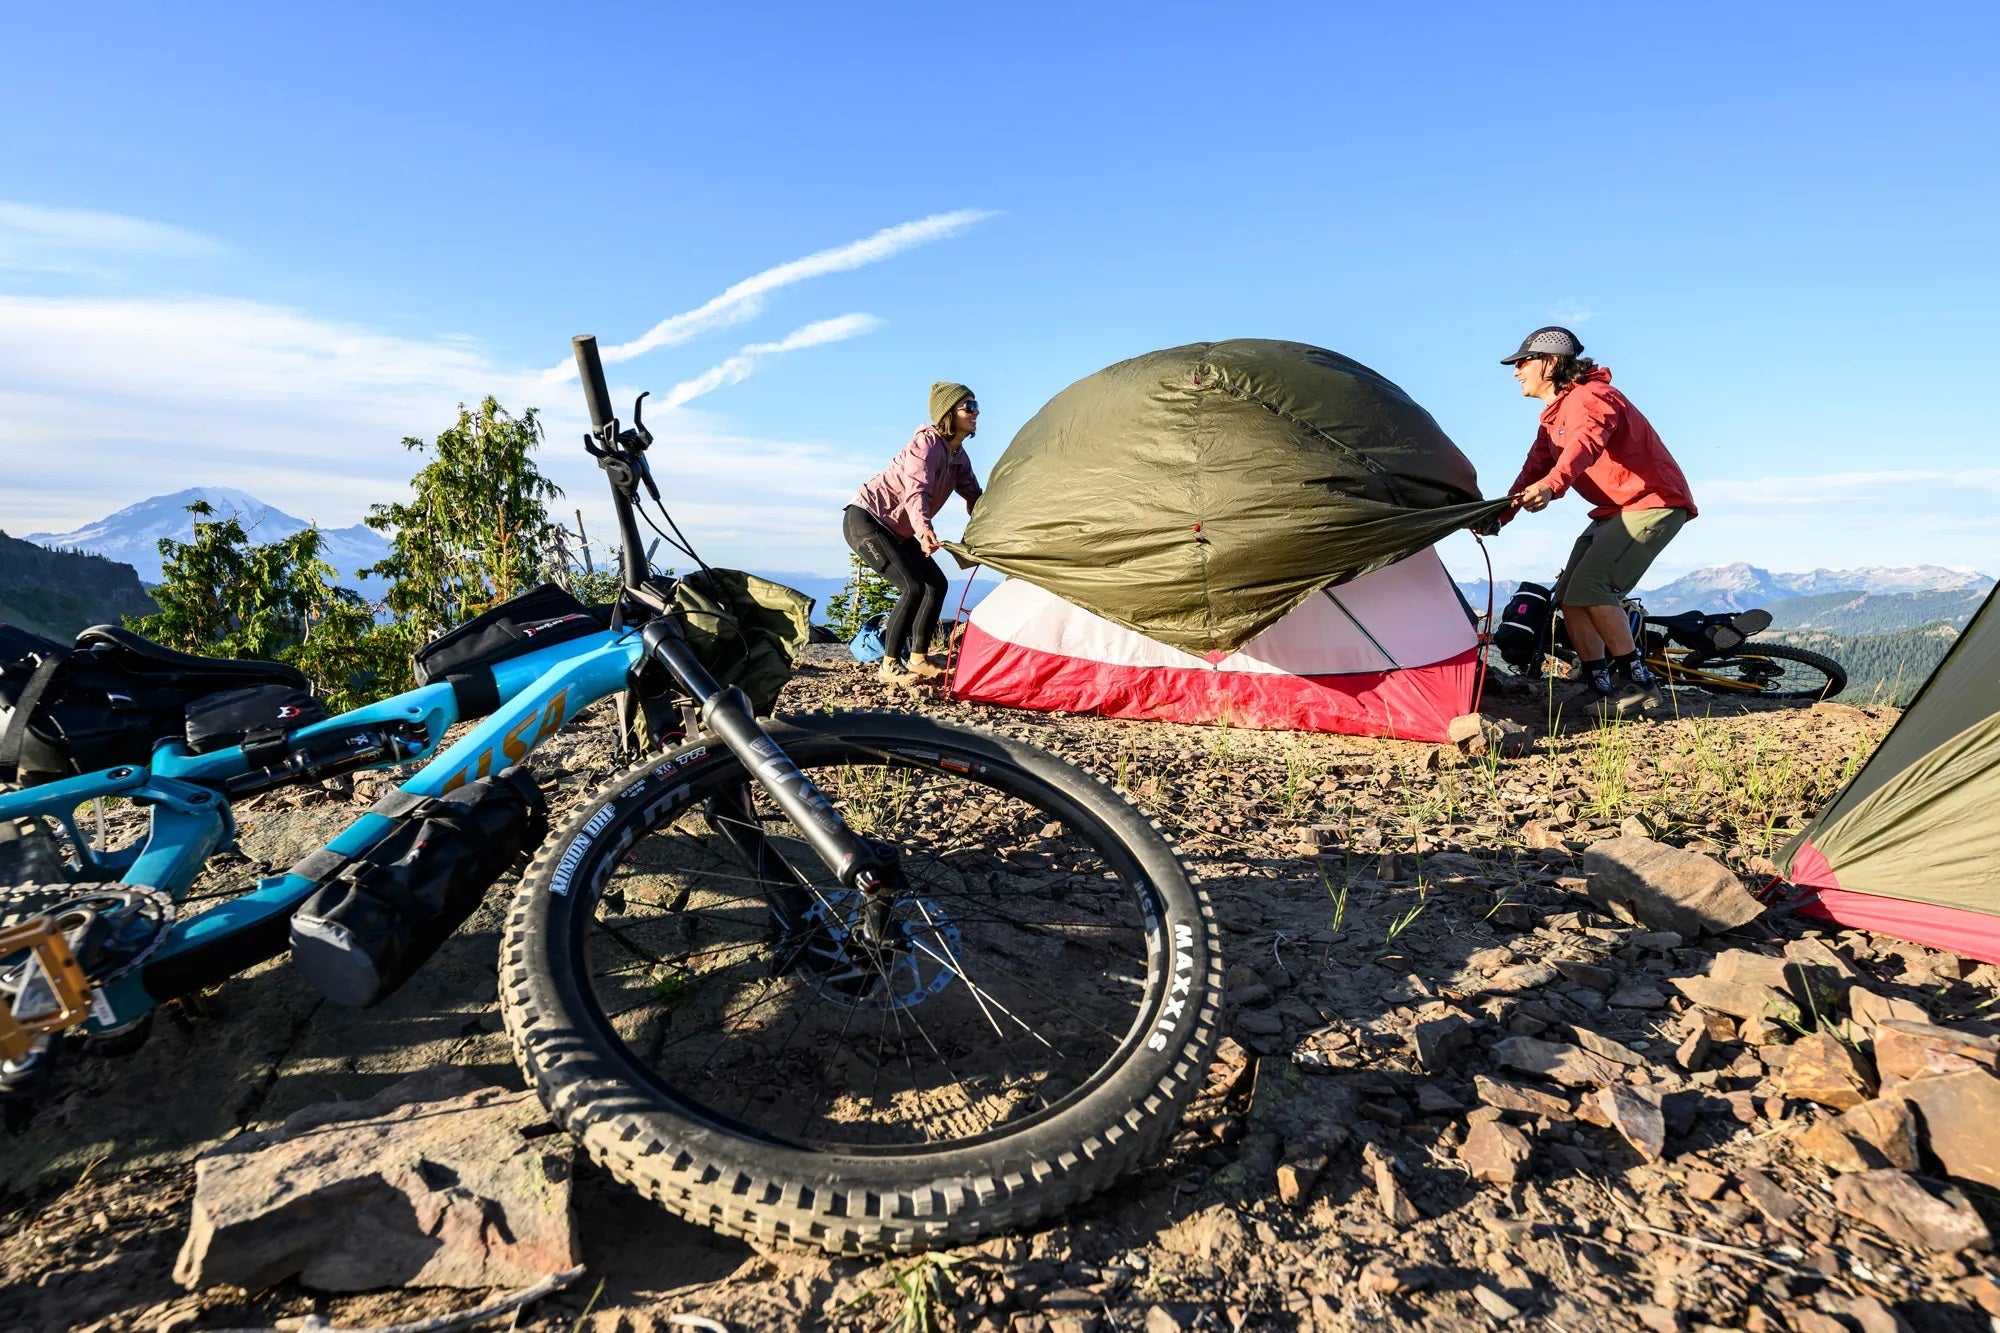 MSR : Matériel de camping et équipement outdoor de qualité